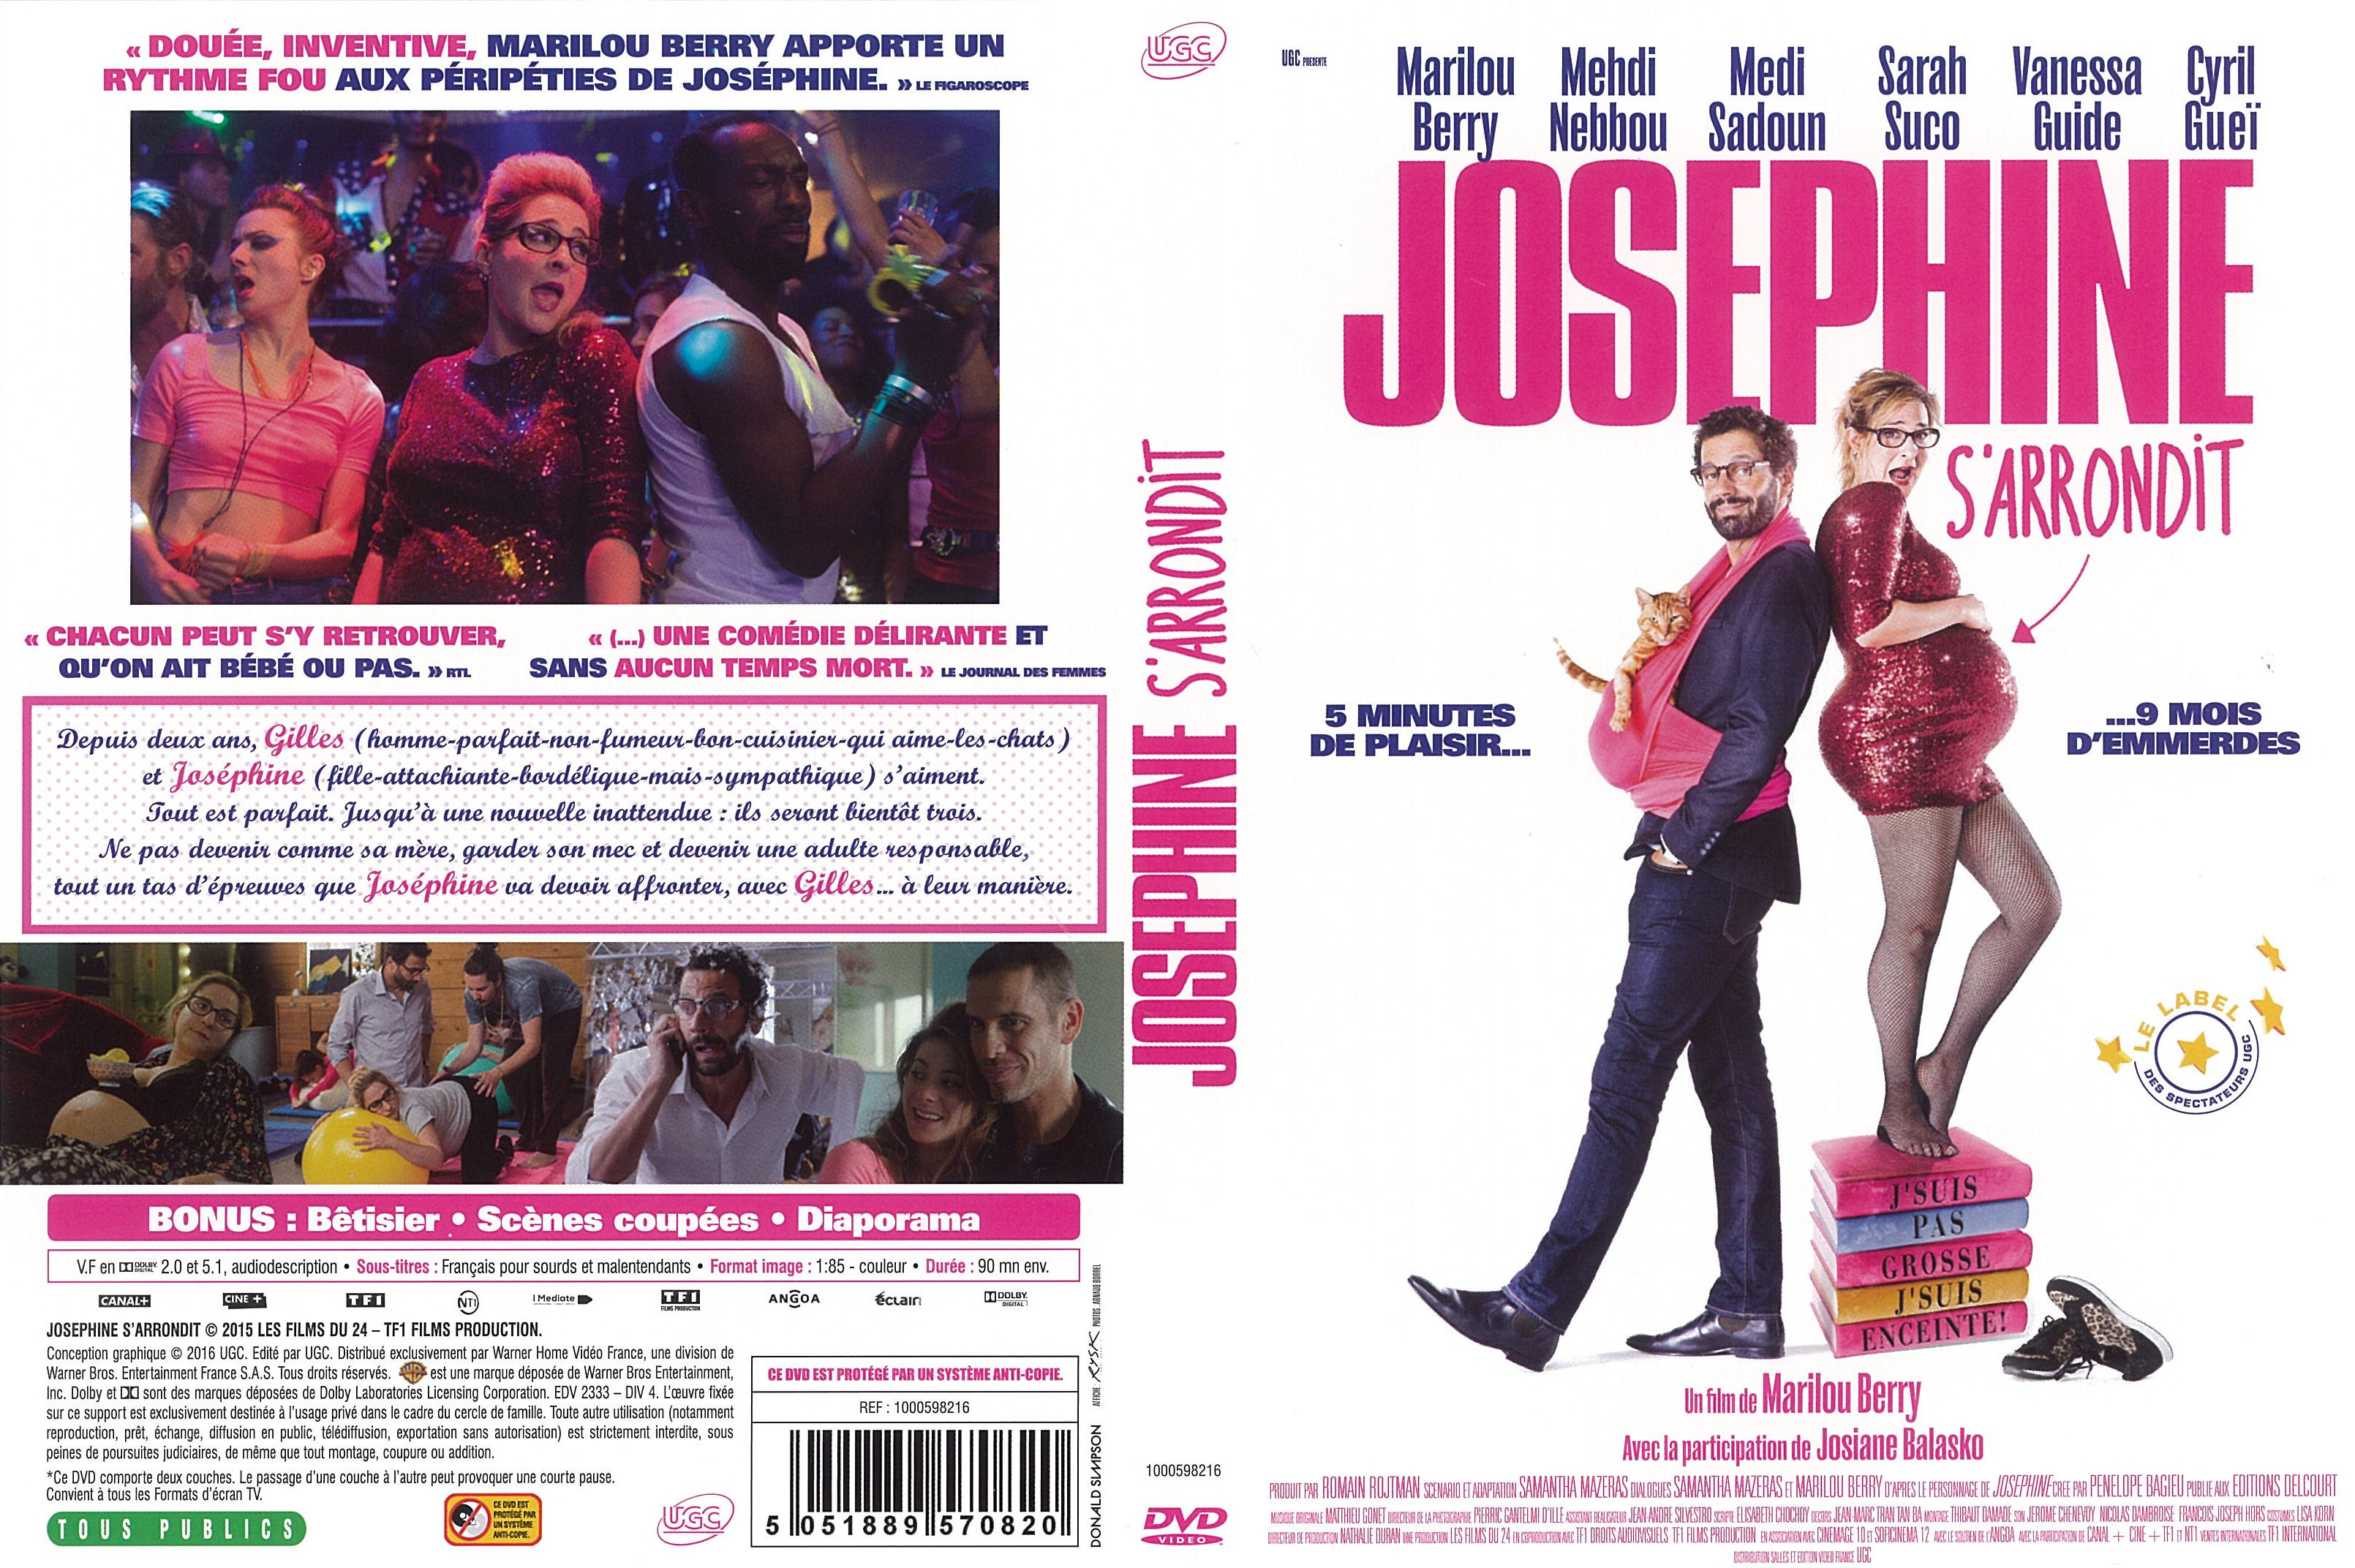 Jaquette DVD de Joséphine s arrondit Cinéma Passion